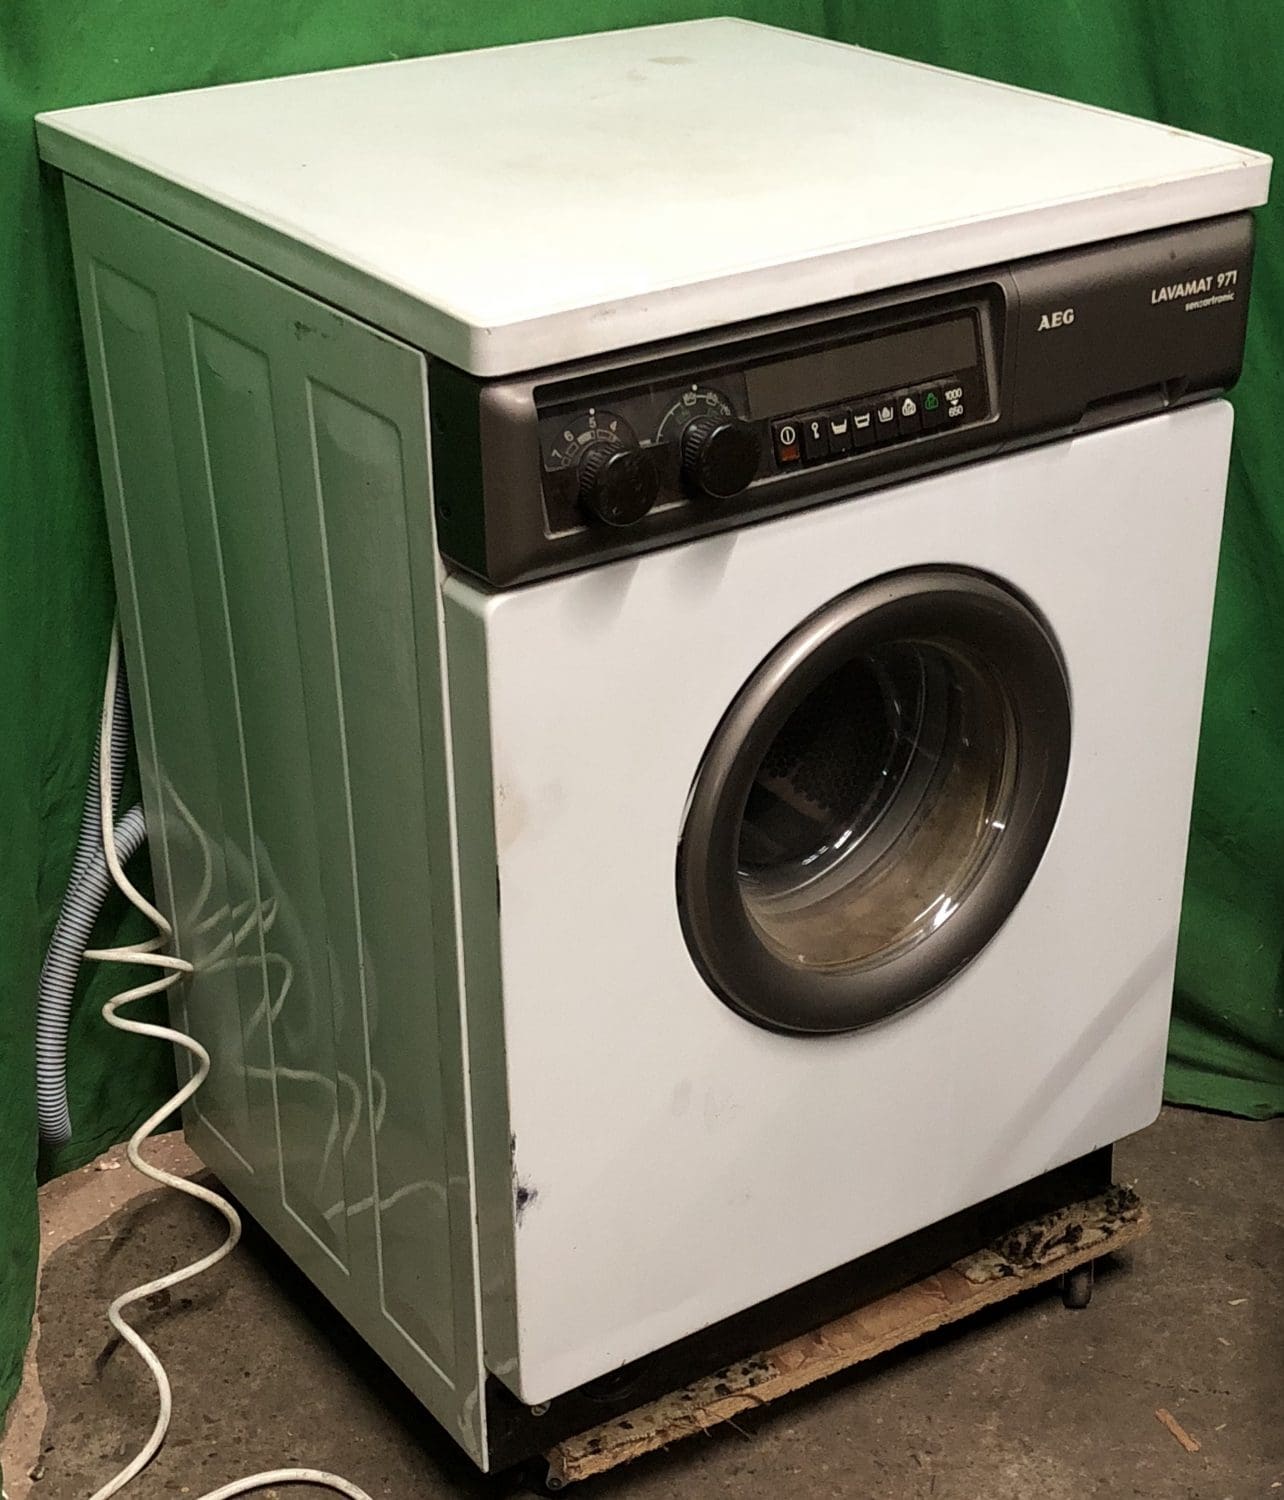 Thbaegflw01 Washing Machine Aeg Lavamat 971 Trevor Howsam Limited